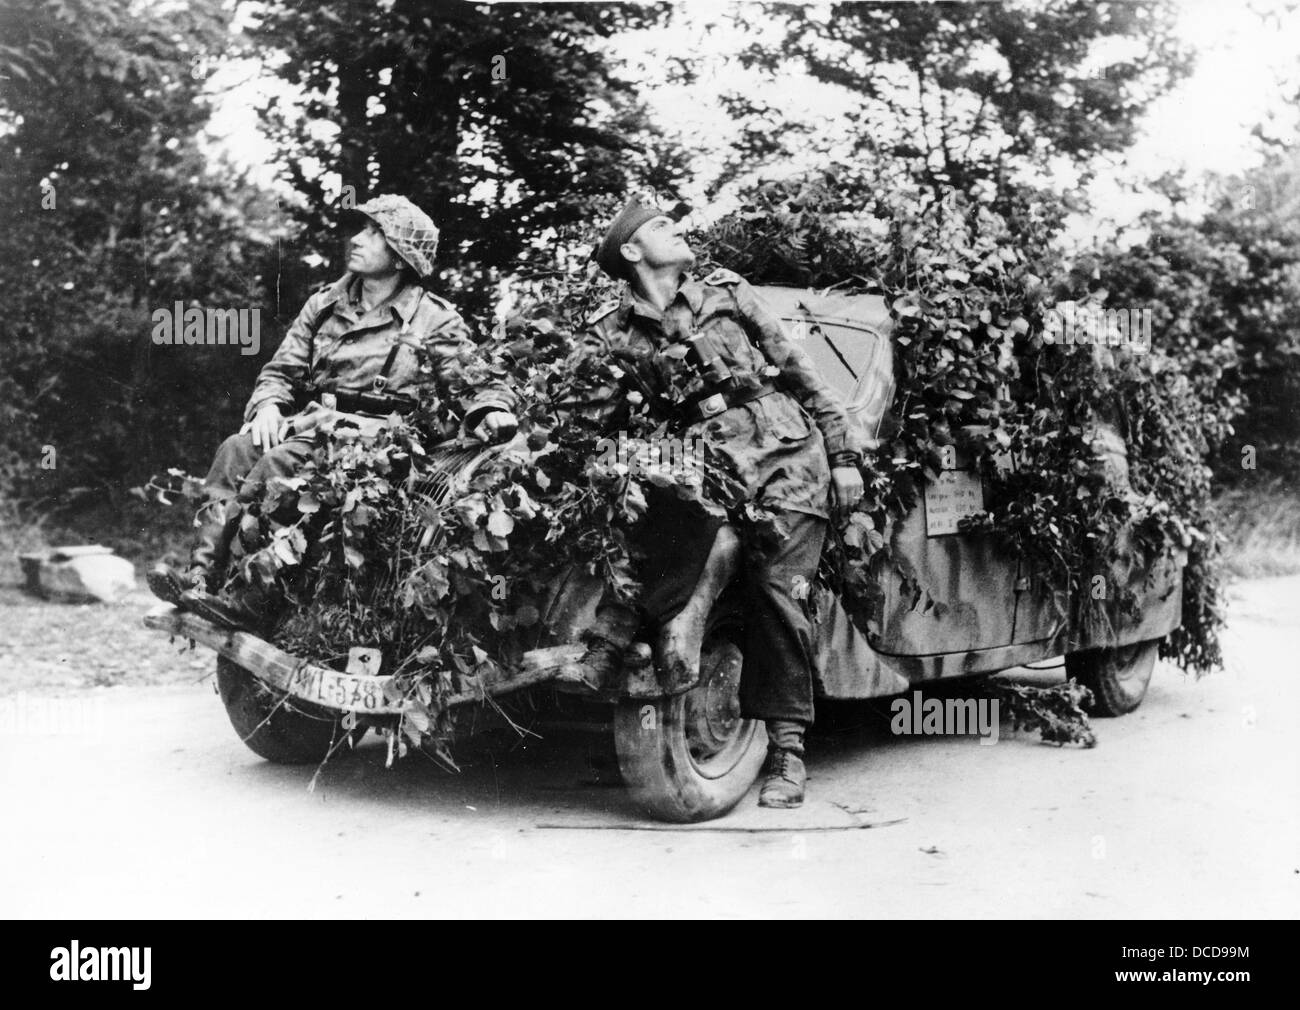 Des membres de la Wehrmacht allemande sont photographiés devant un véhicule camouflé en Normandie, en France, en juillet 1944. Fotoarchiv für Zeitgeschichte Banque D'Images